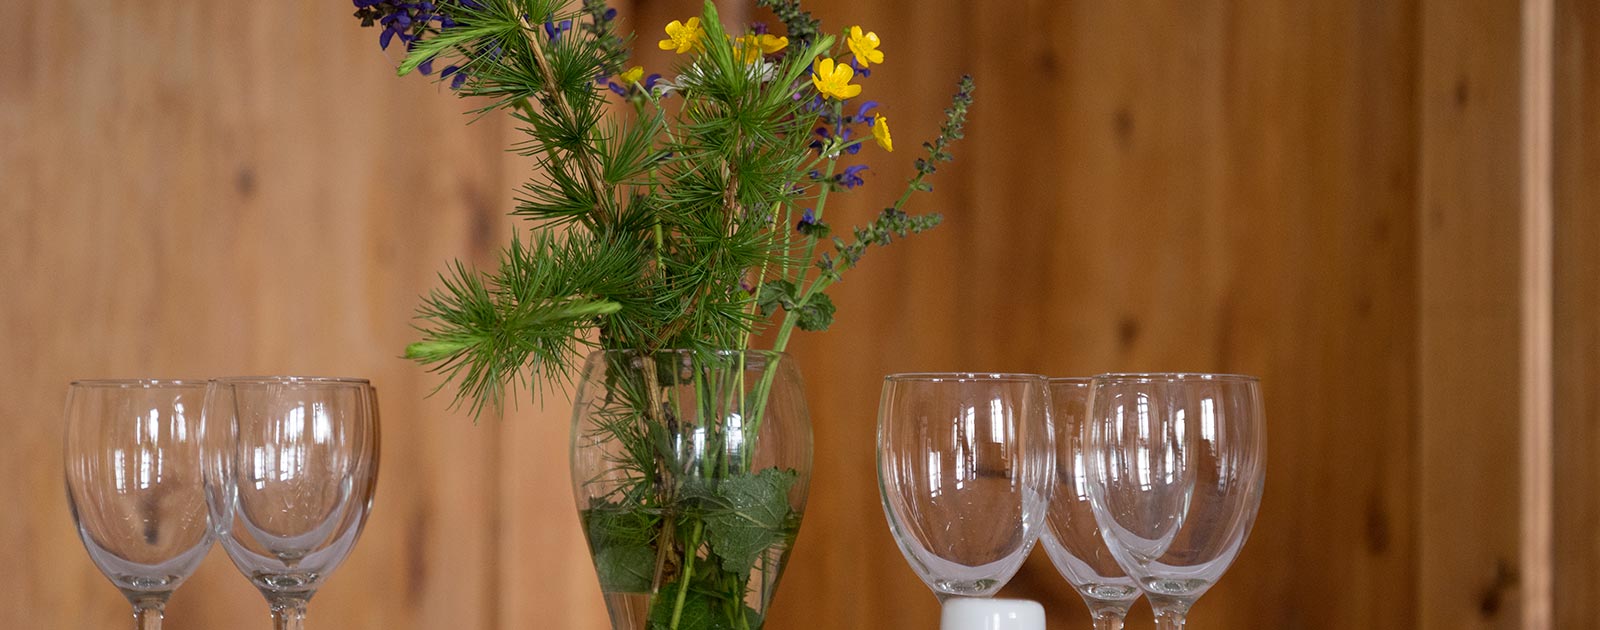 decorazione del tavolo con fiori, sono presenti anche quattro bicchieri da vino